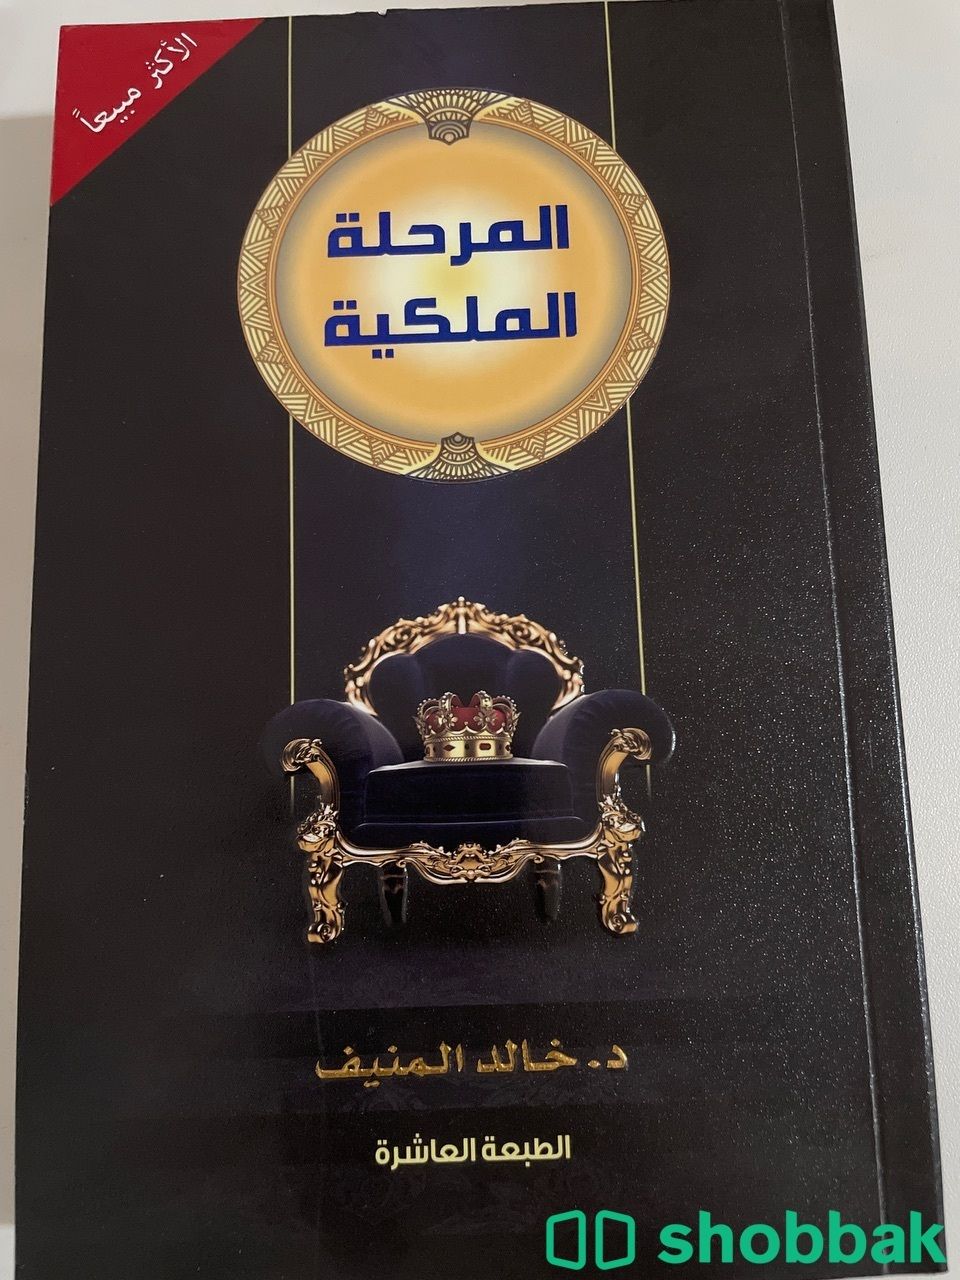 المرحلة الملكية - خالد المنيف  Shobbak Saudi Arabia